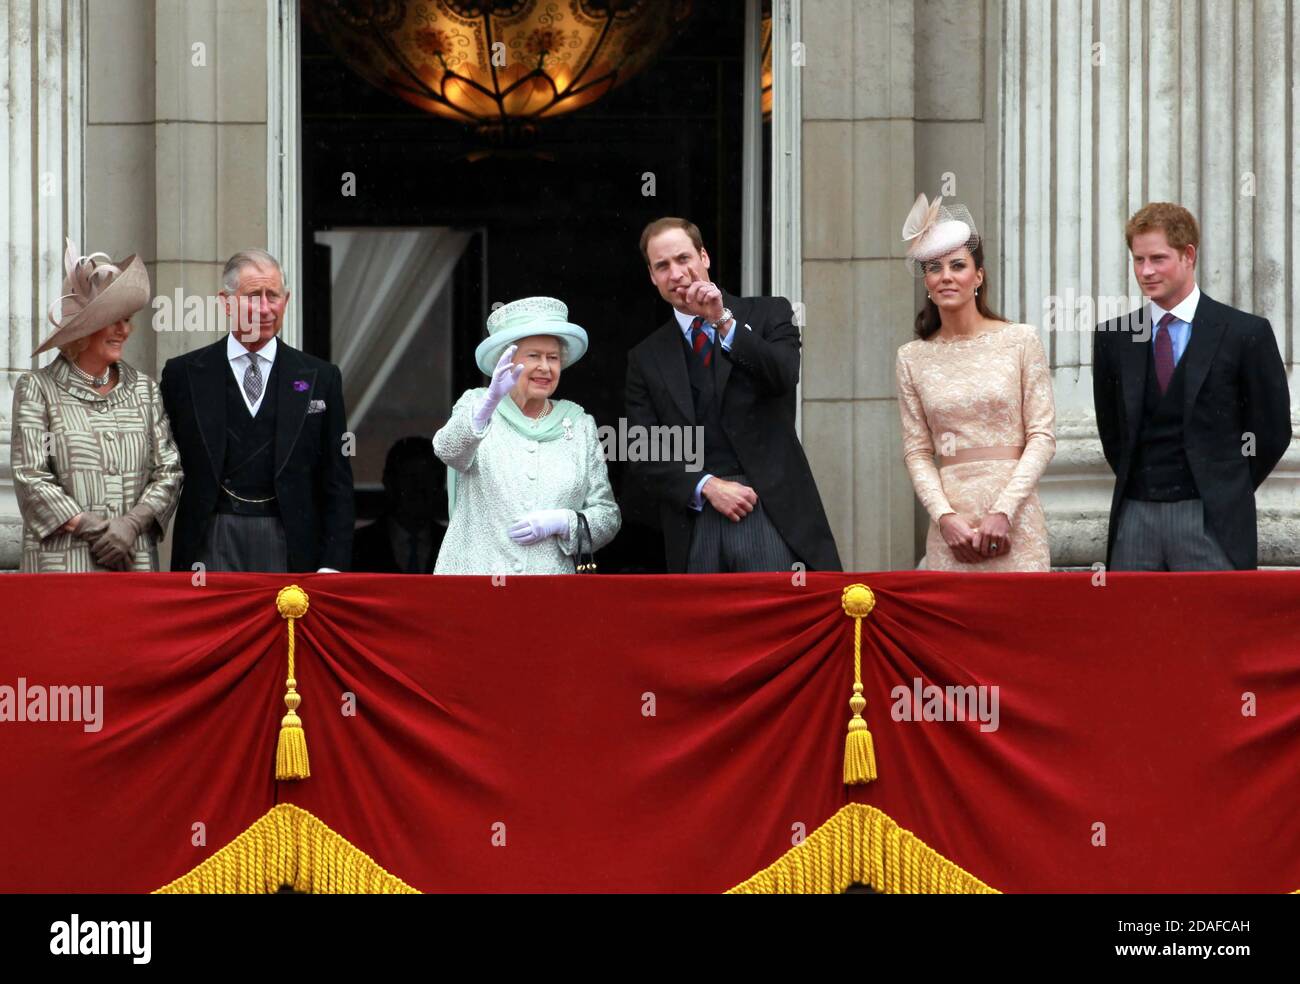 File foto datata 05/06/12 di (da sinistra a destra) la Duchessa di Cornovaglia, il Principe di Galles, la Regina Elisabetta II, il Duca e la Duchessa di Cambridge e il Principe Harry Queen che appaiono sul balcone di Buckingham Palace durante le celebrazioni del Giubileo del Diamante. Foto Stock